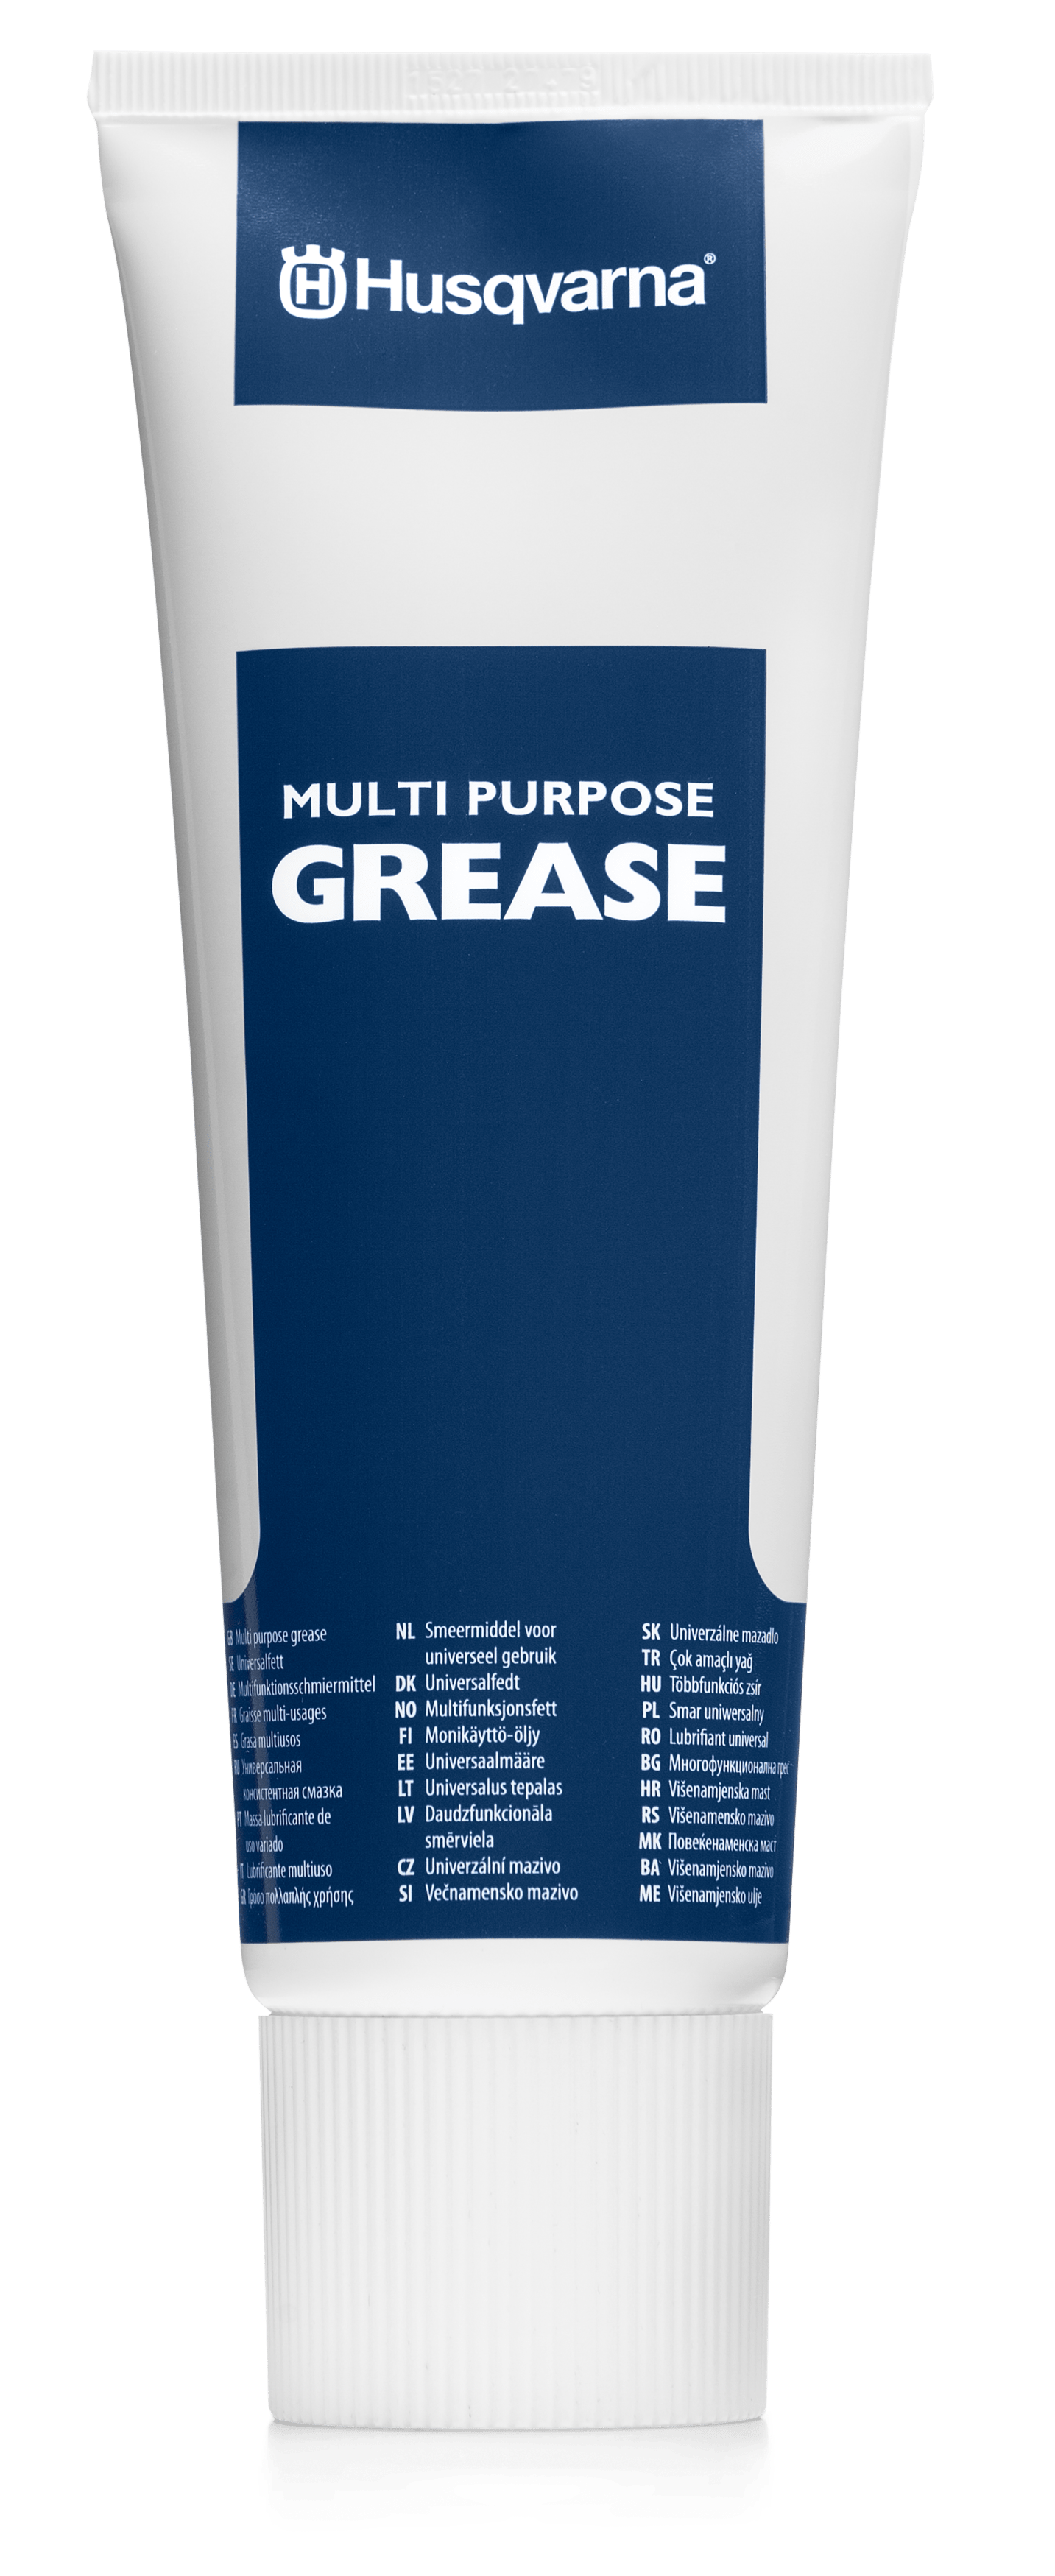 Multi purpose grease